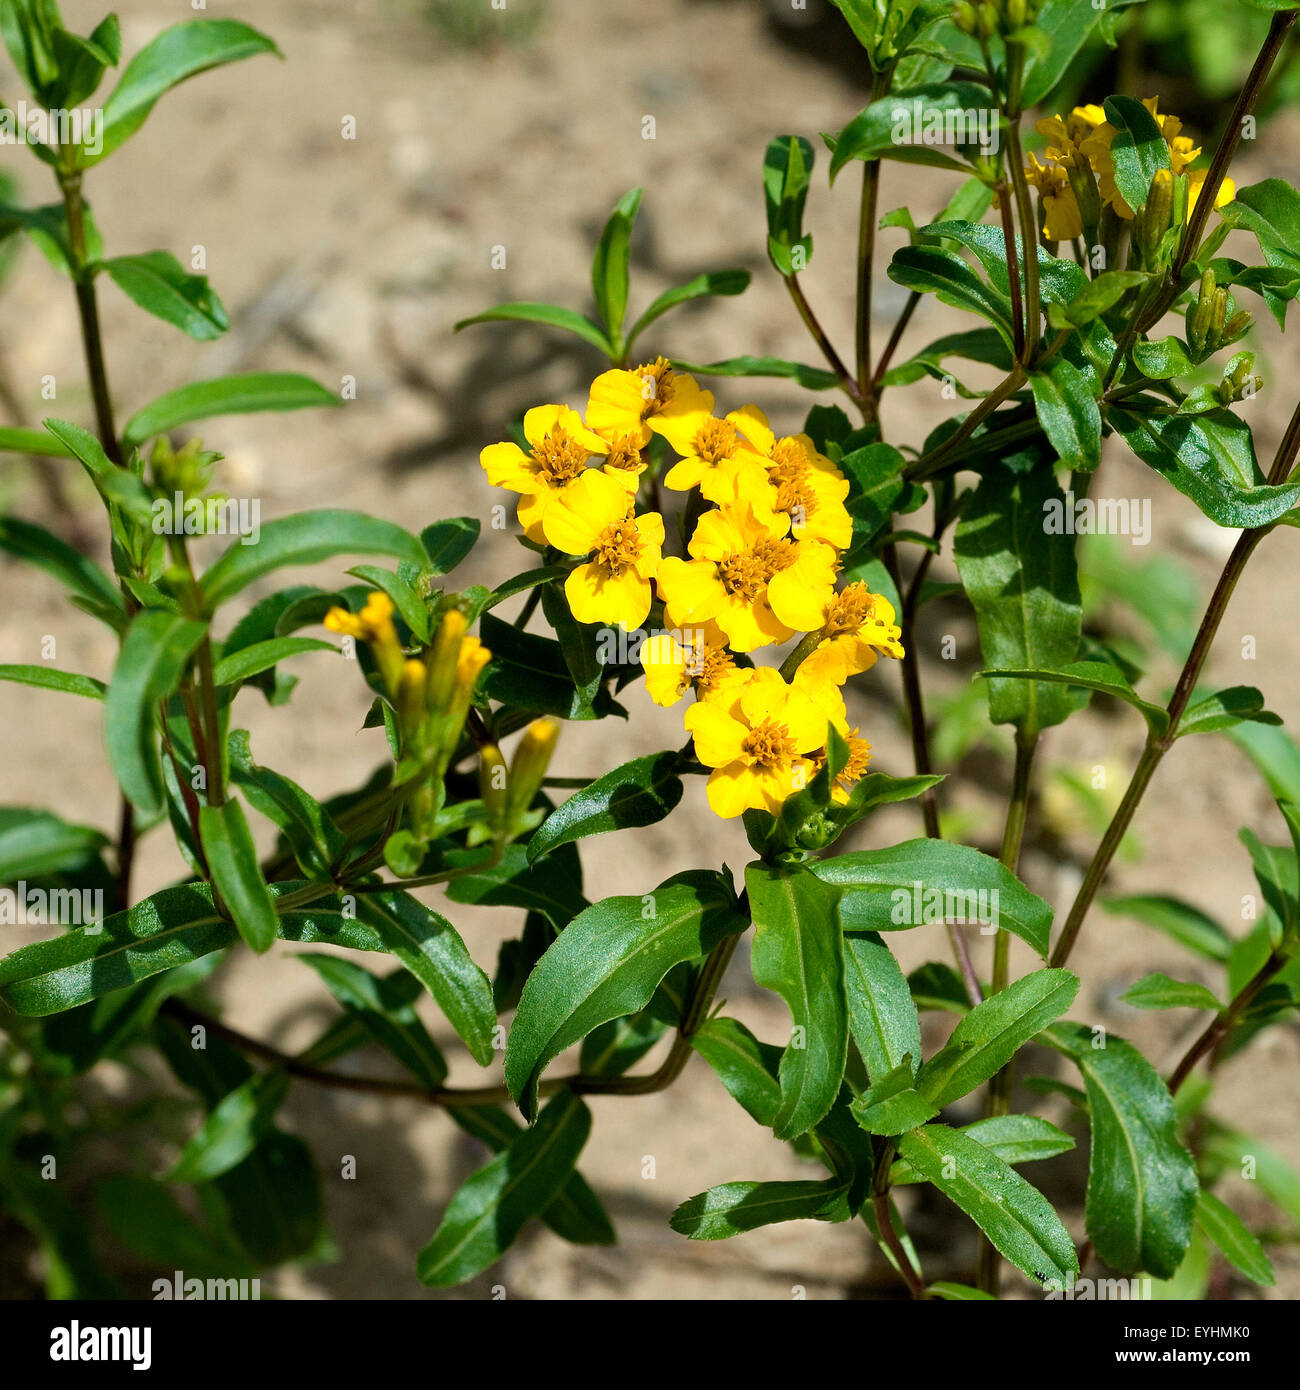 Glaenzende Studentenblume; Tagetes lucida Stock Photo